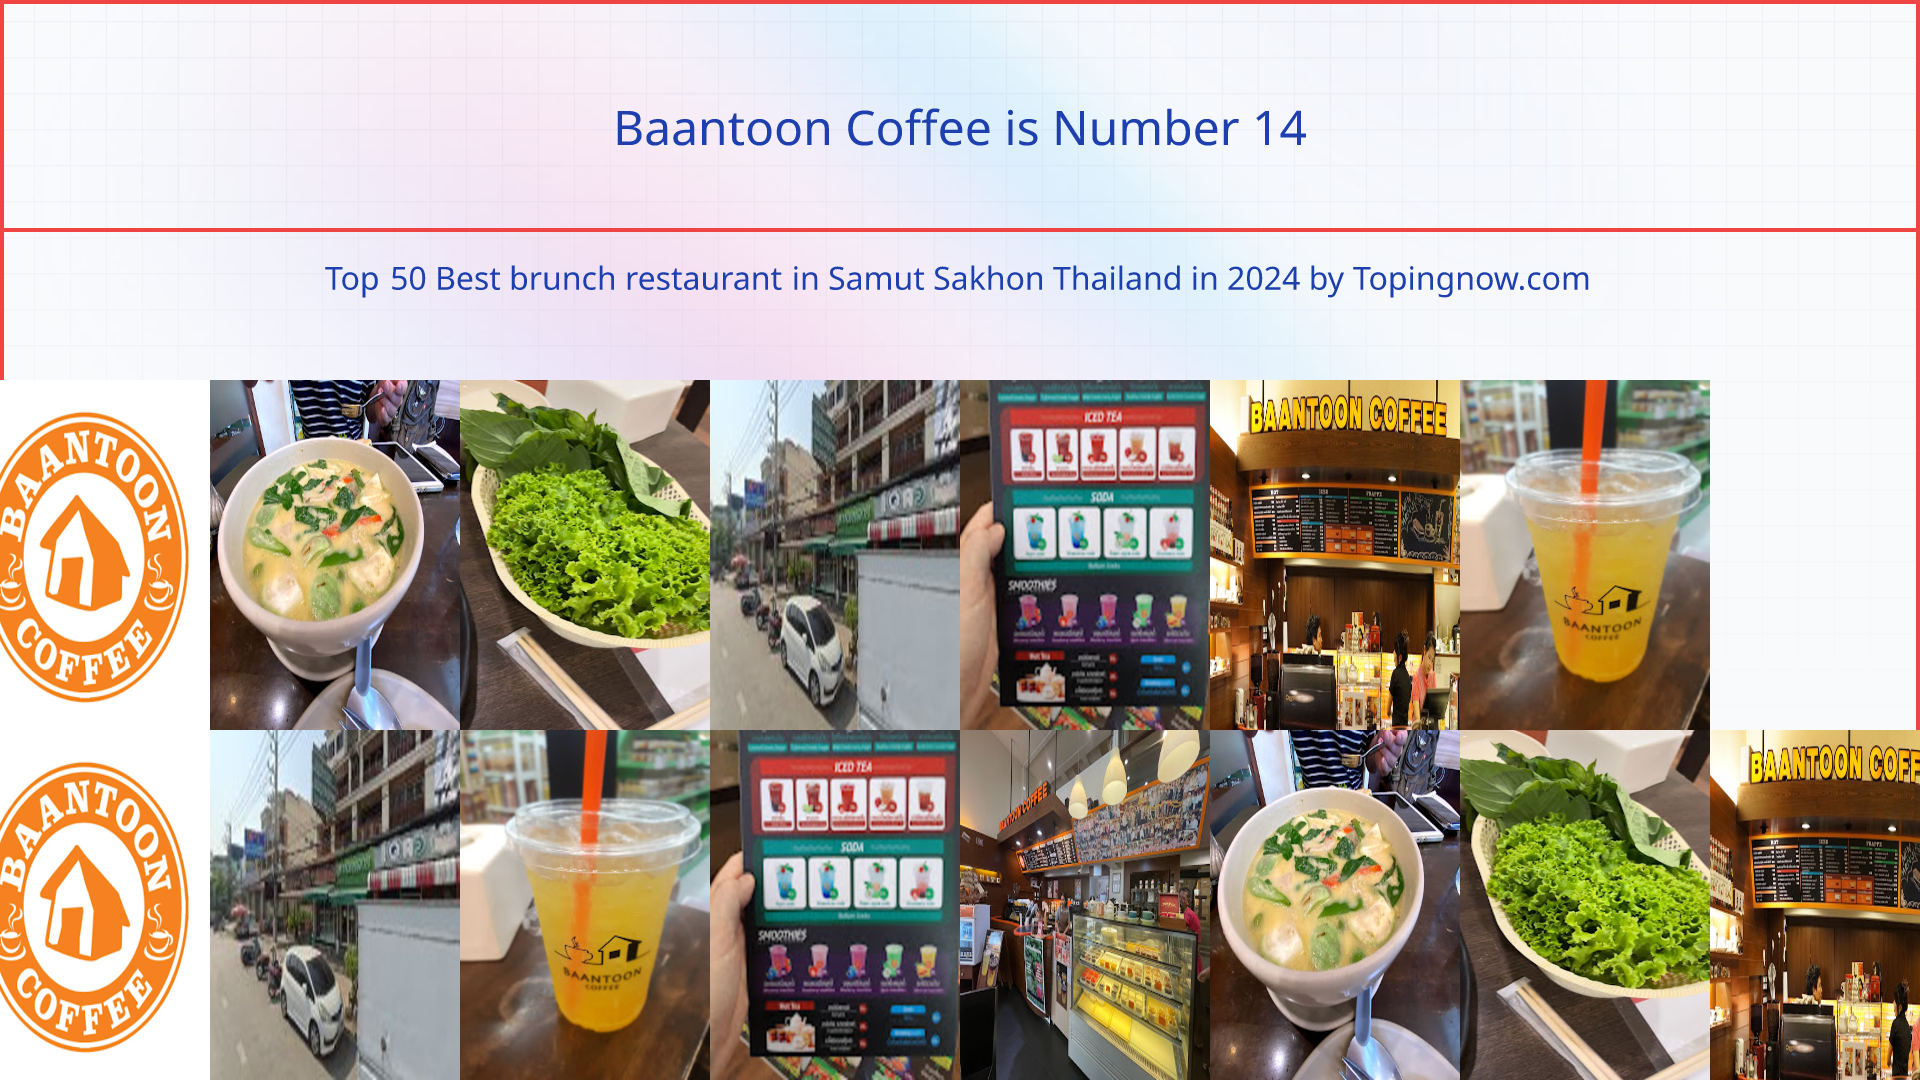 Baantoon Coffee: Top 50 Best brunch restaurant in Samut Sakhon Thailand in 2024